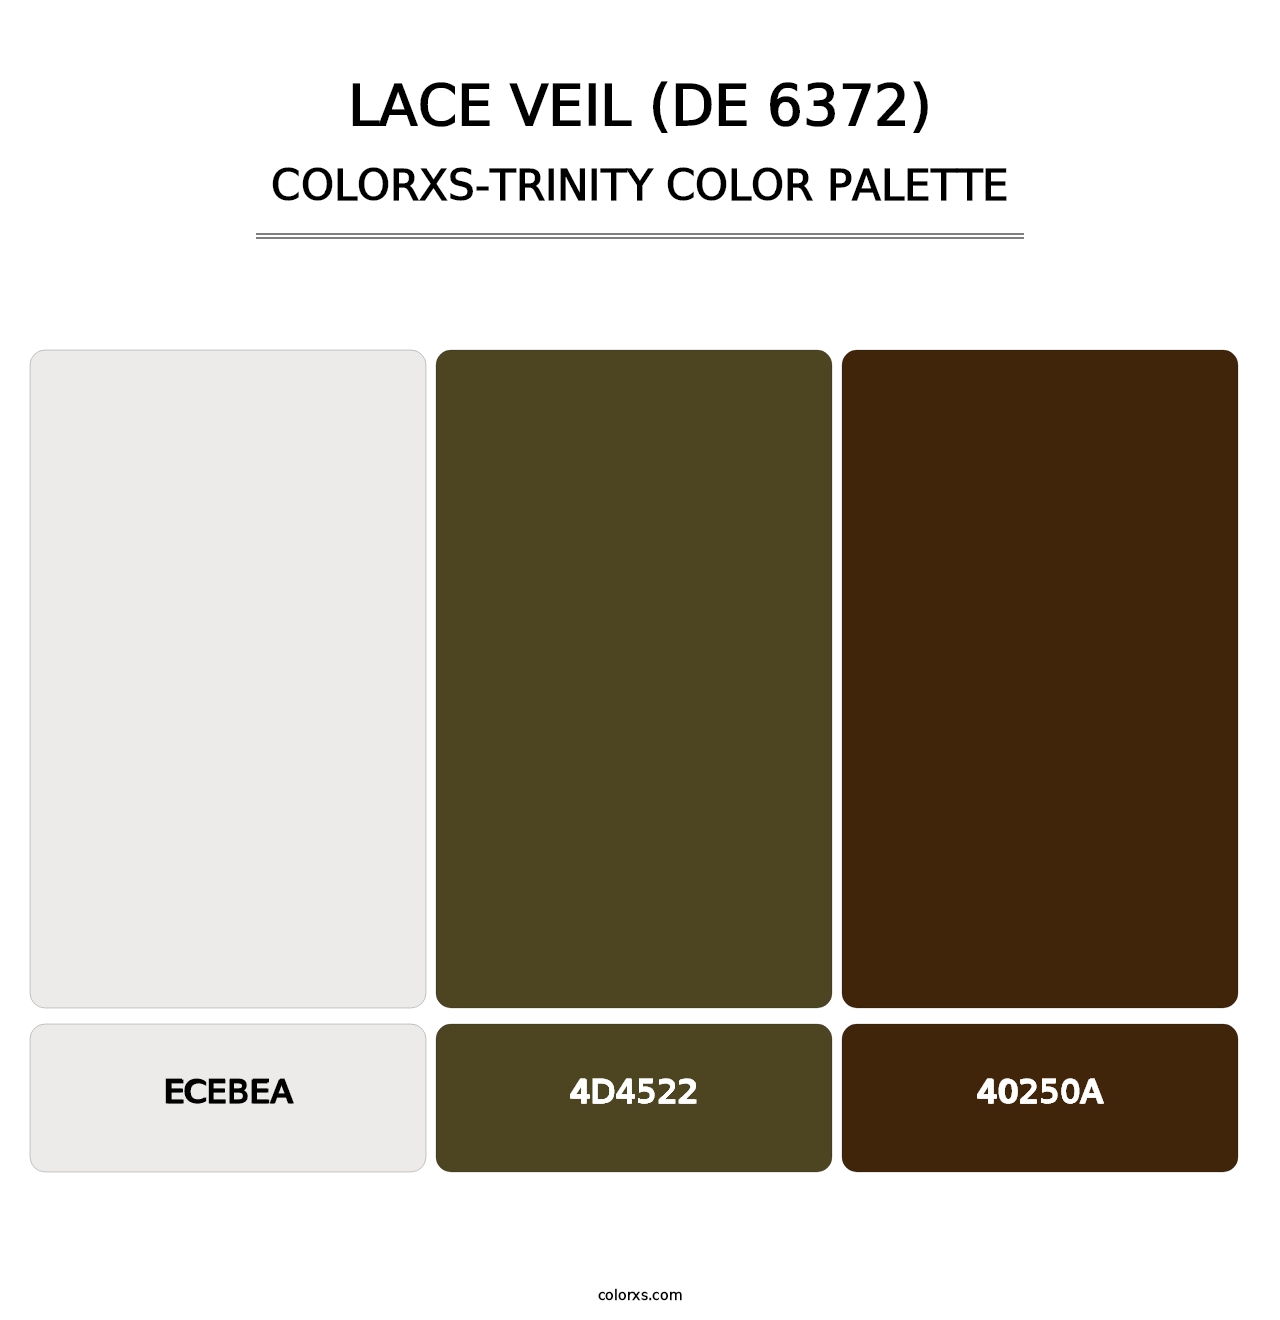 Lace Veil (DE 6372) - Colorxs Trinity Palette